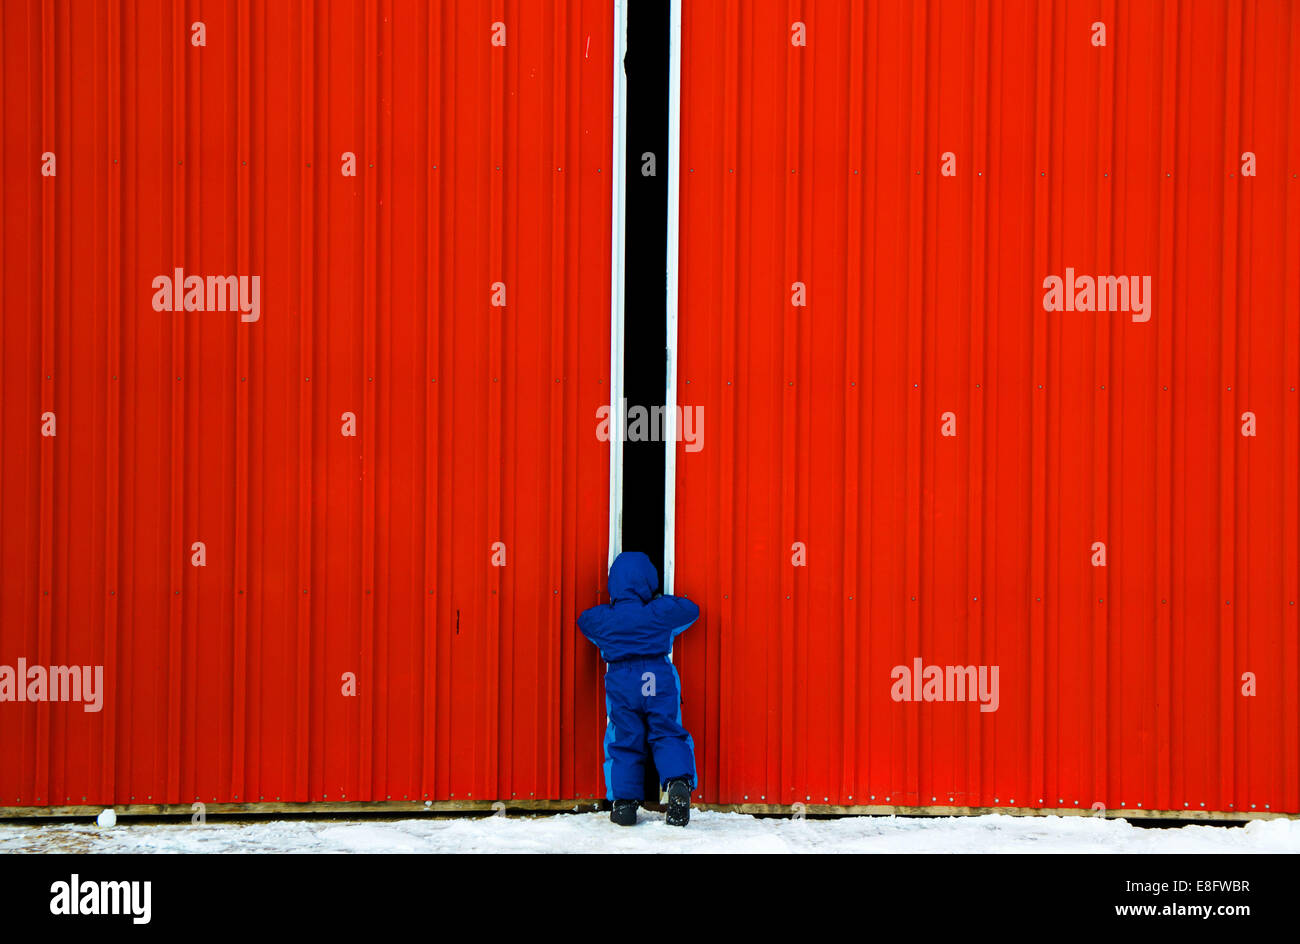 Chico mirando a través de la brecha en una puerta de un granero, EE.UU. Foto de stock